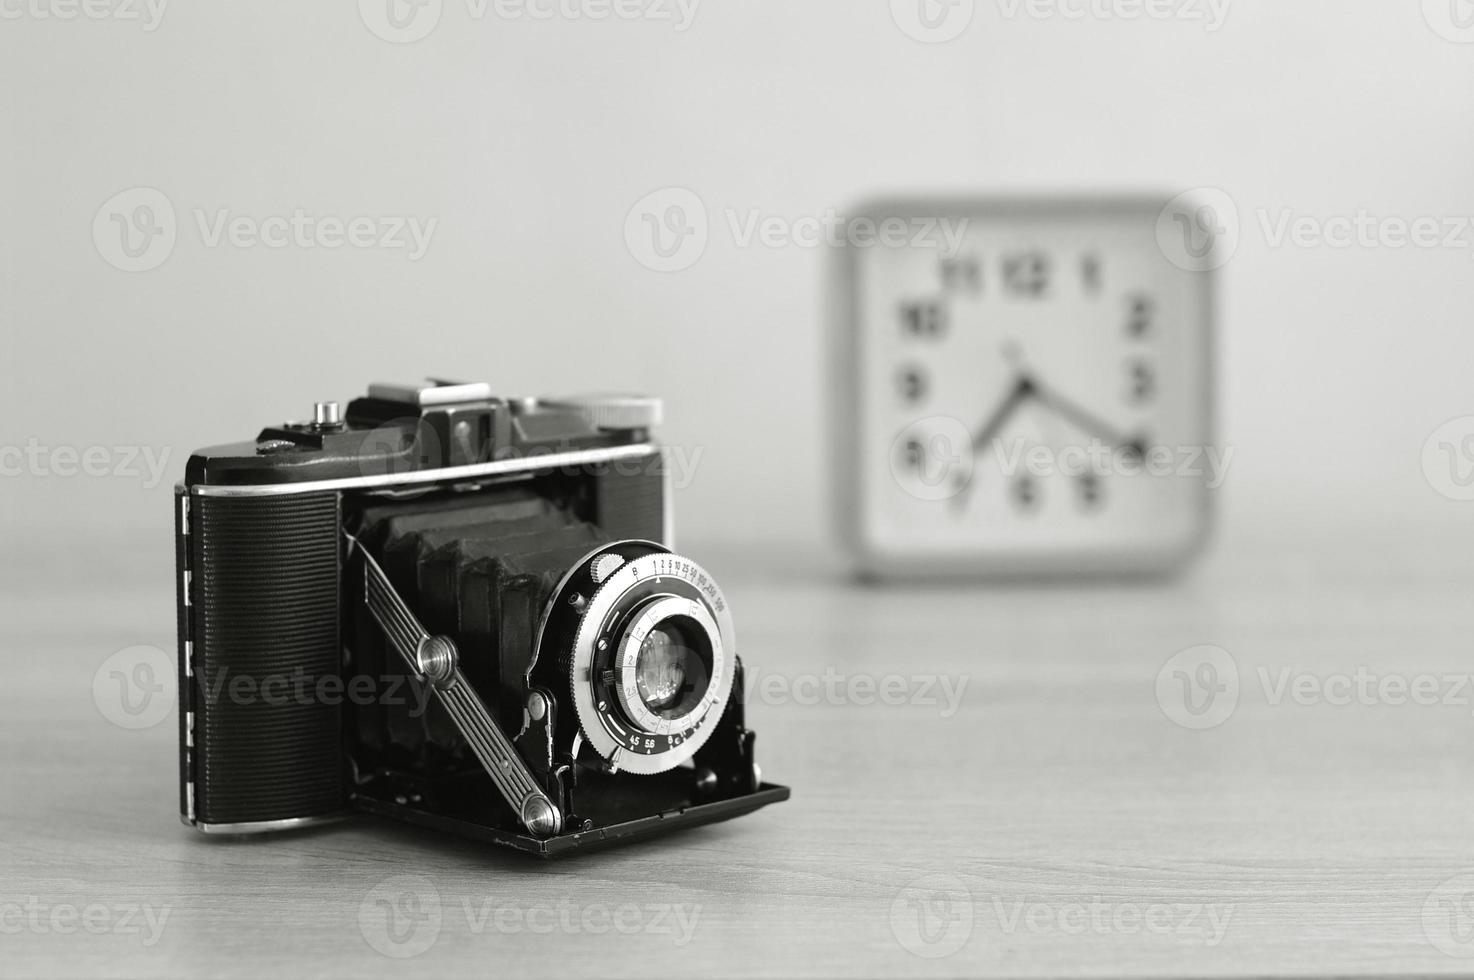 câmera de filme analógico de médio formato vintage e um relógio em preto e branco. câmera de filme antigo com fole. foto